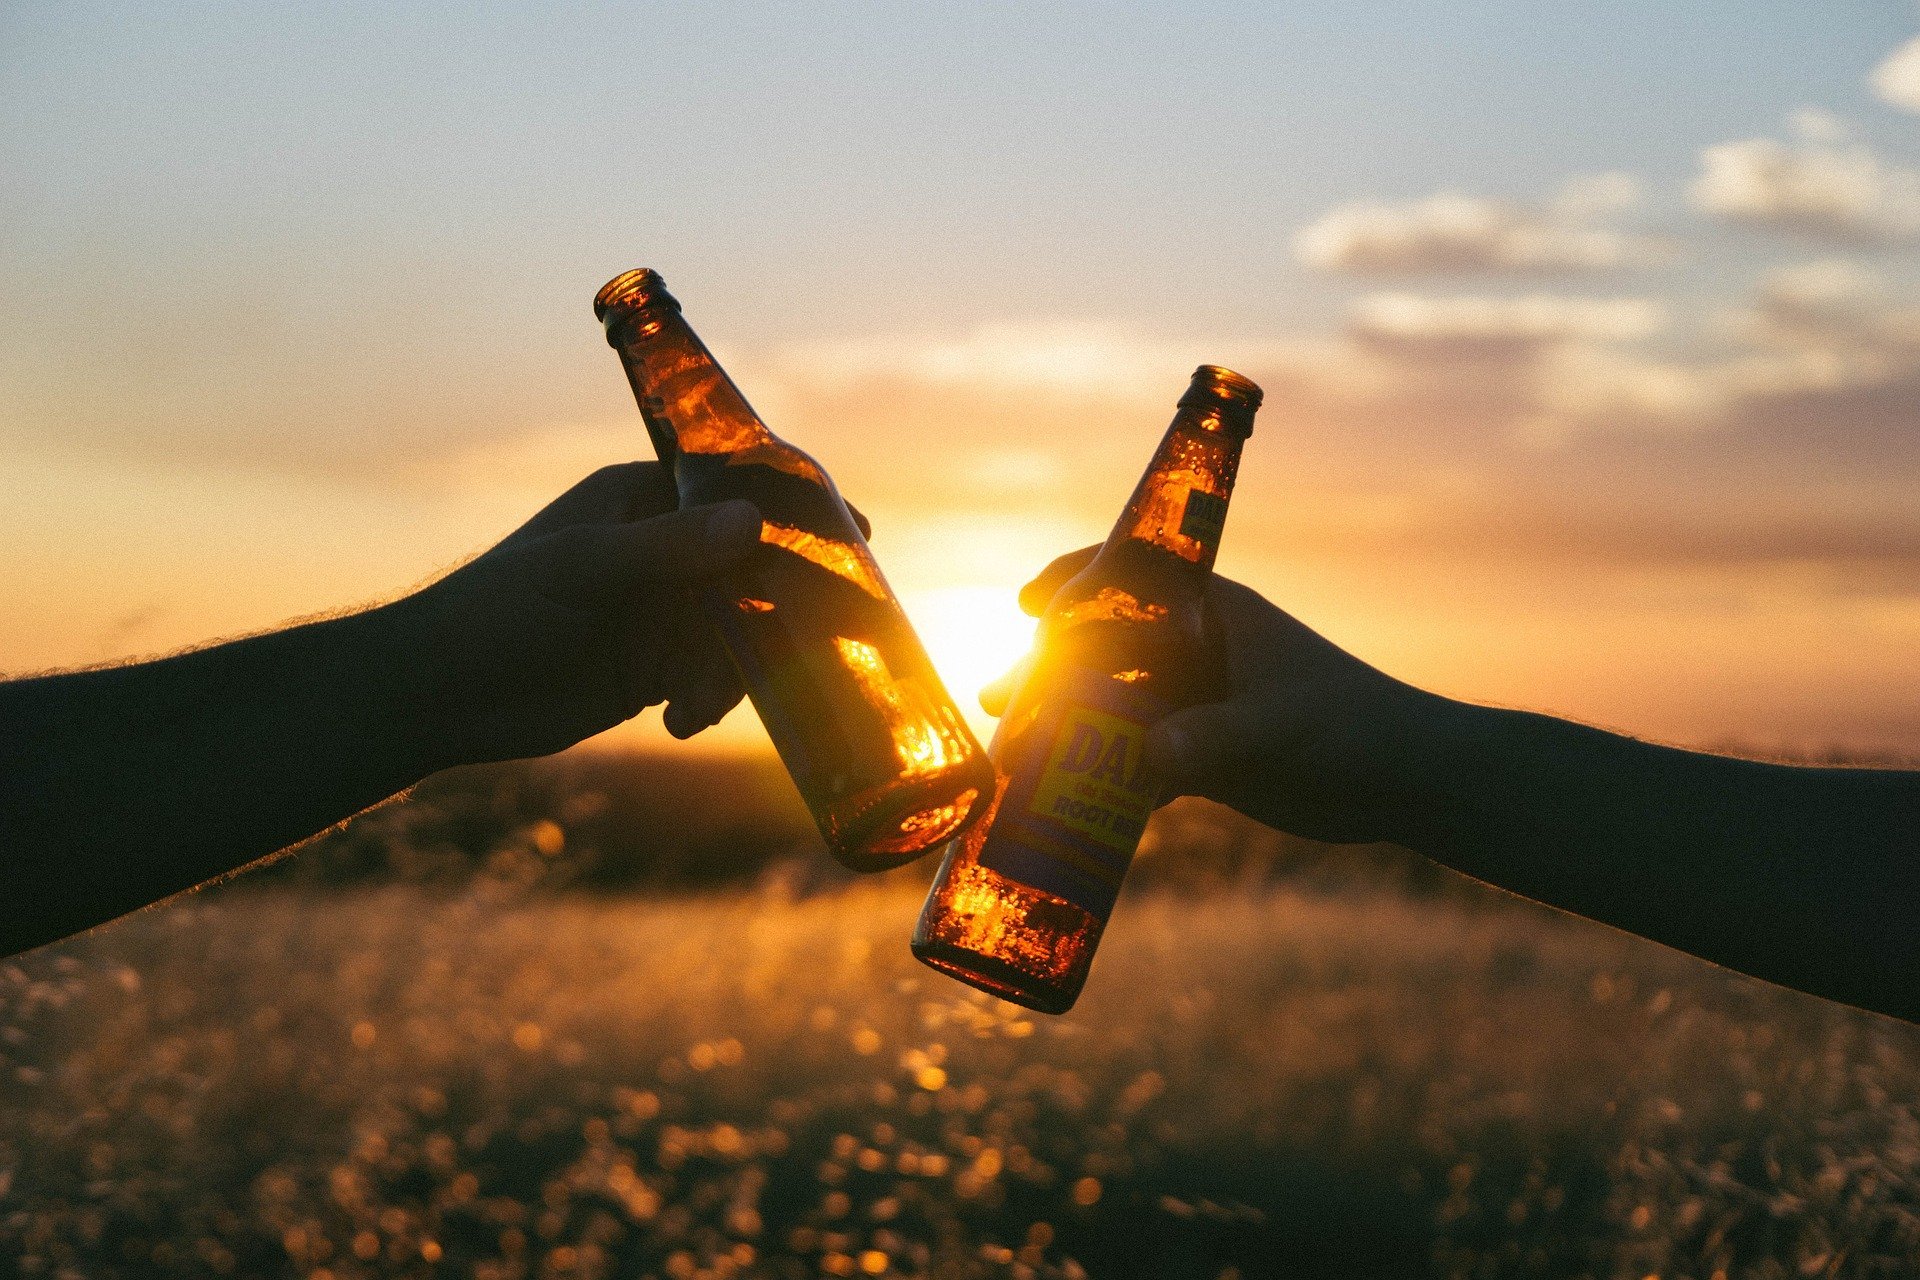 

В Удмуртии почти на 40% снизился уровень отравлений алкоголем

